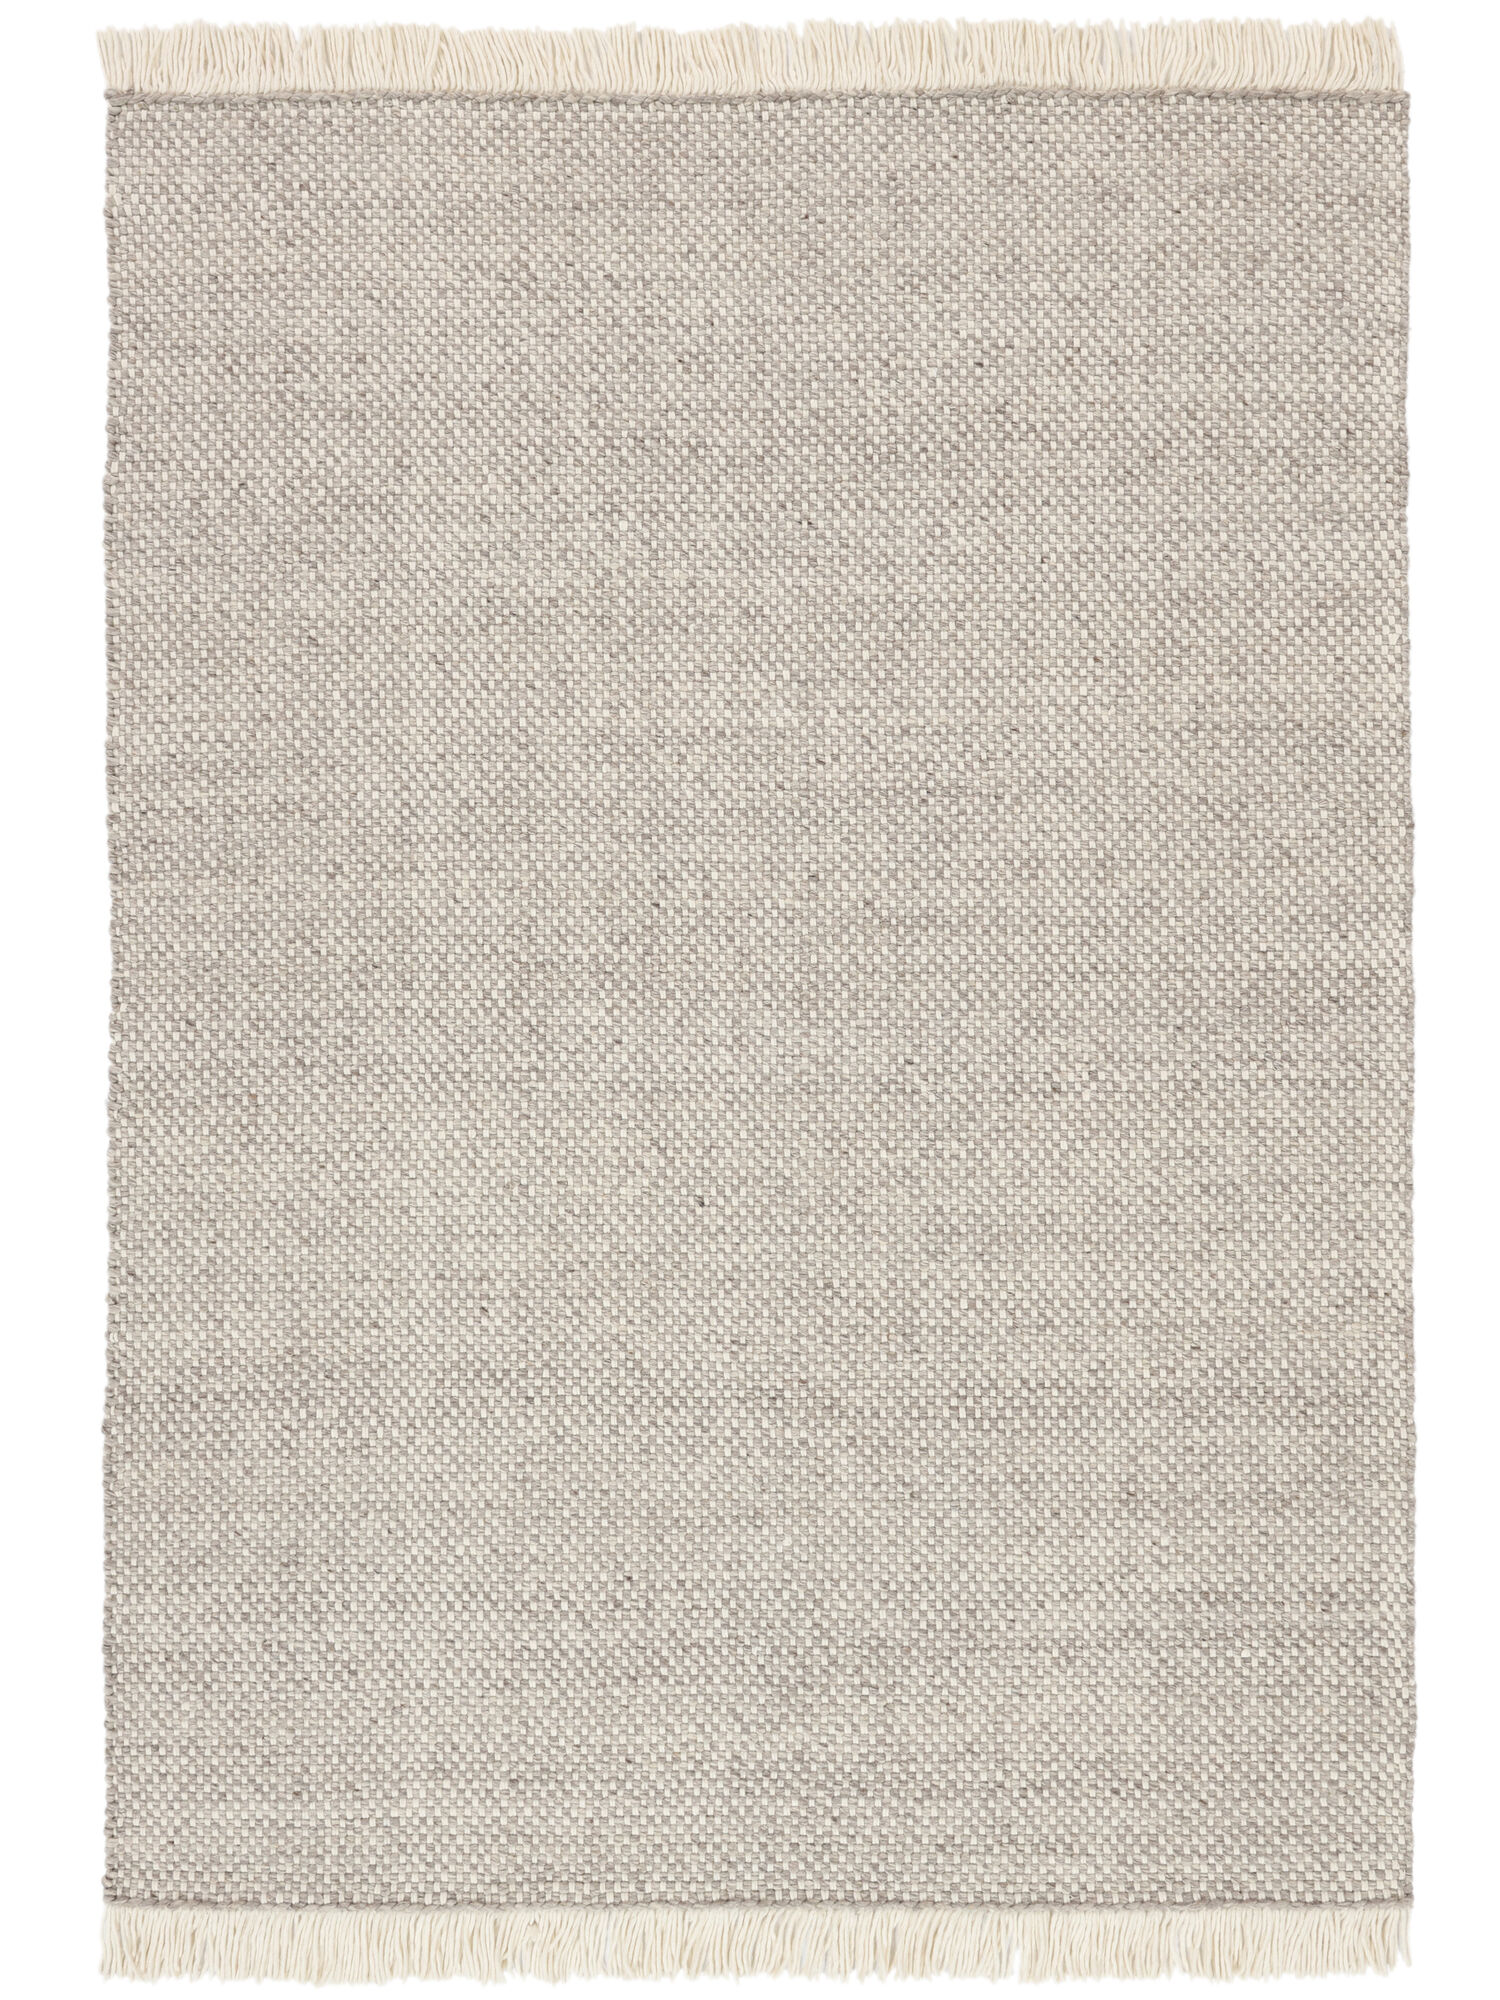 
    Birch - Greige / Off white - 170 x 240 cm
  